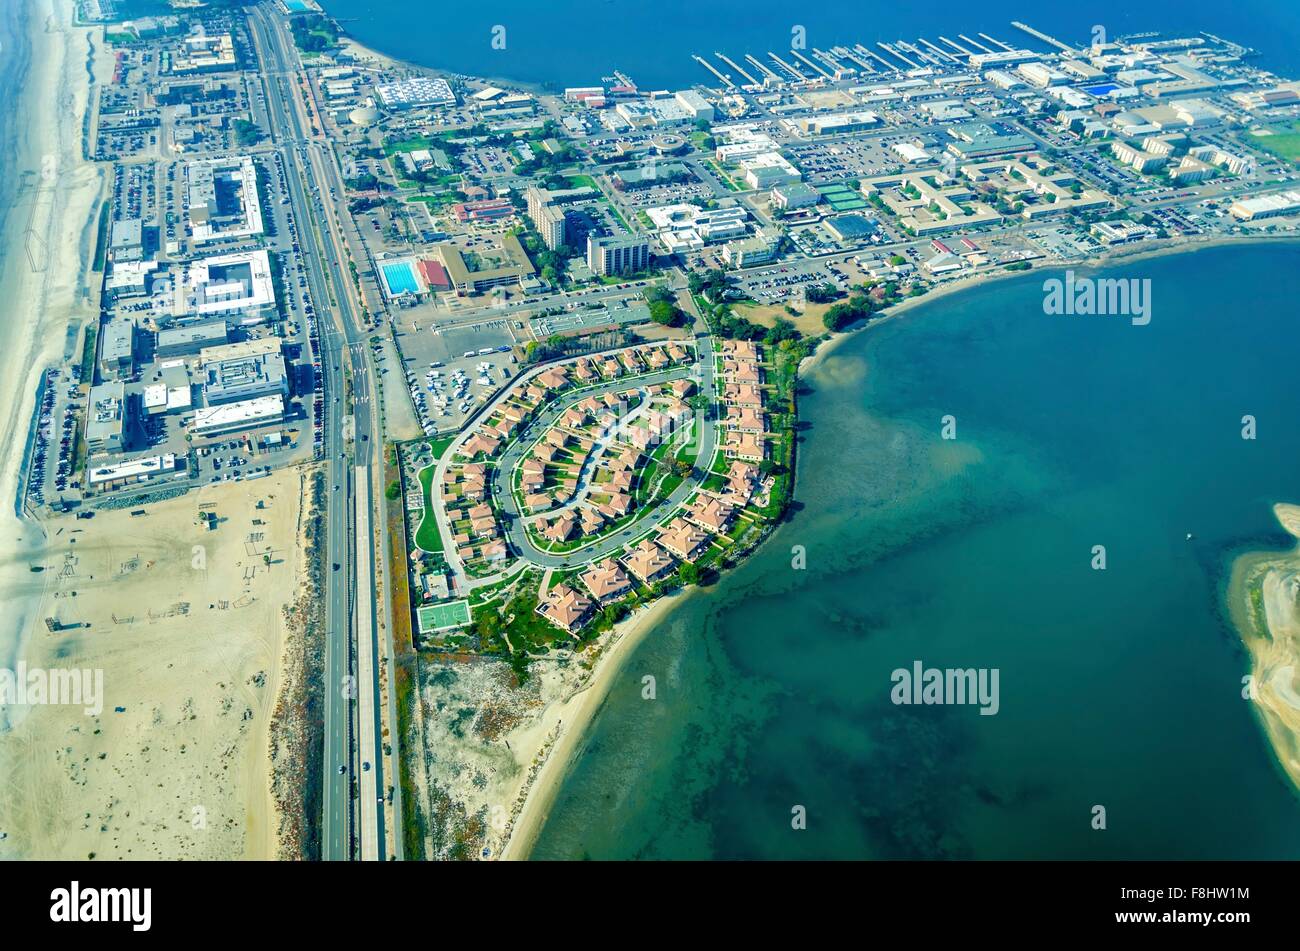 Vue aérienne de l'île Coronado dans la baie de San Diego, le Silver Strand et l'océan Pacifique en Californie du Sud, United Stat Banque D'Images